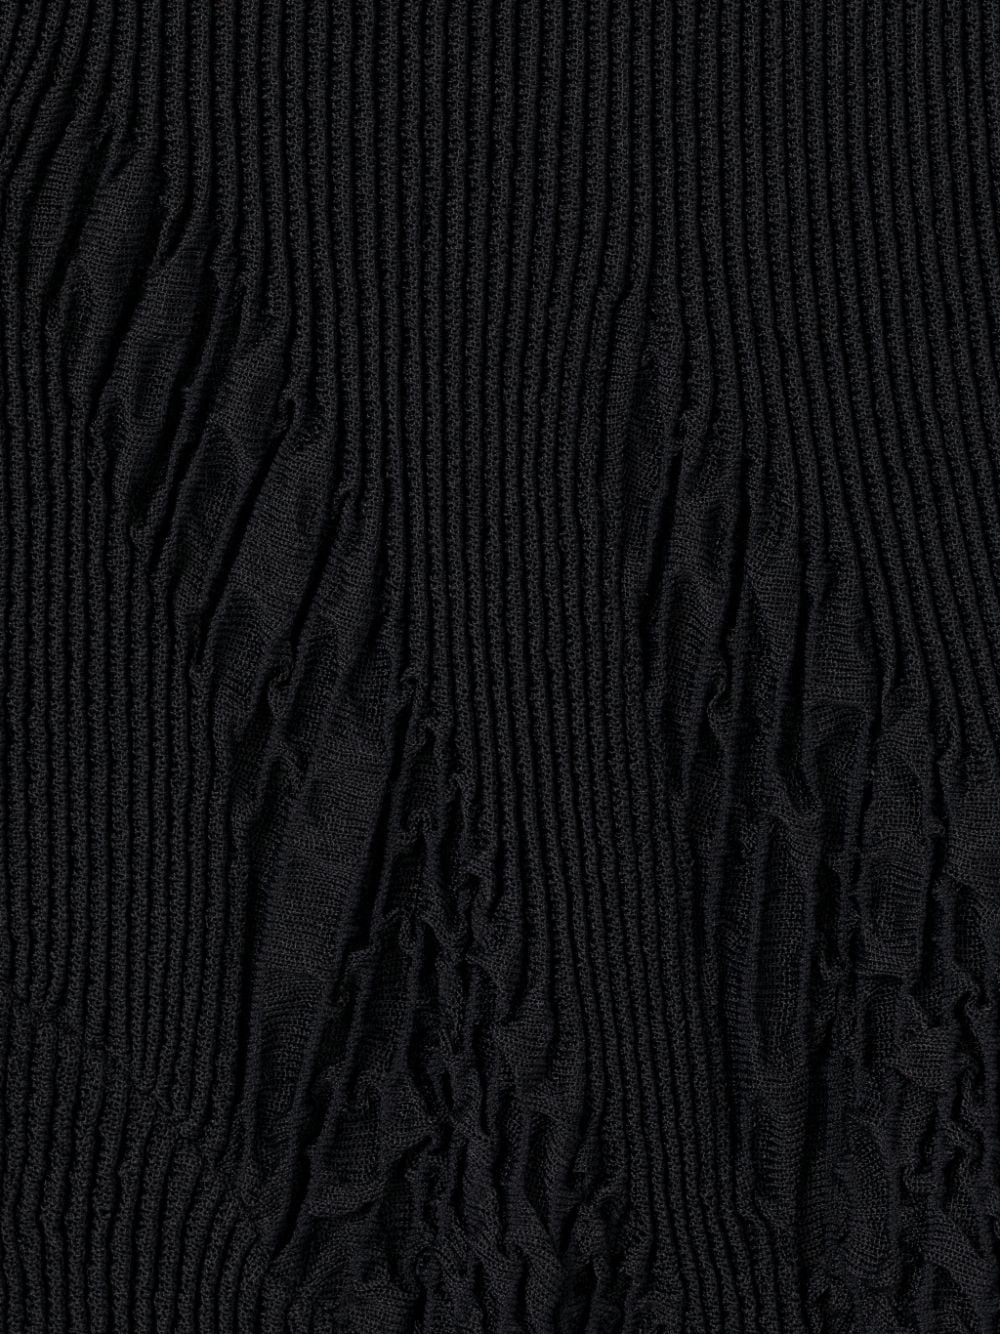 Rib knits – Fabricville